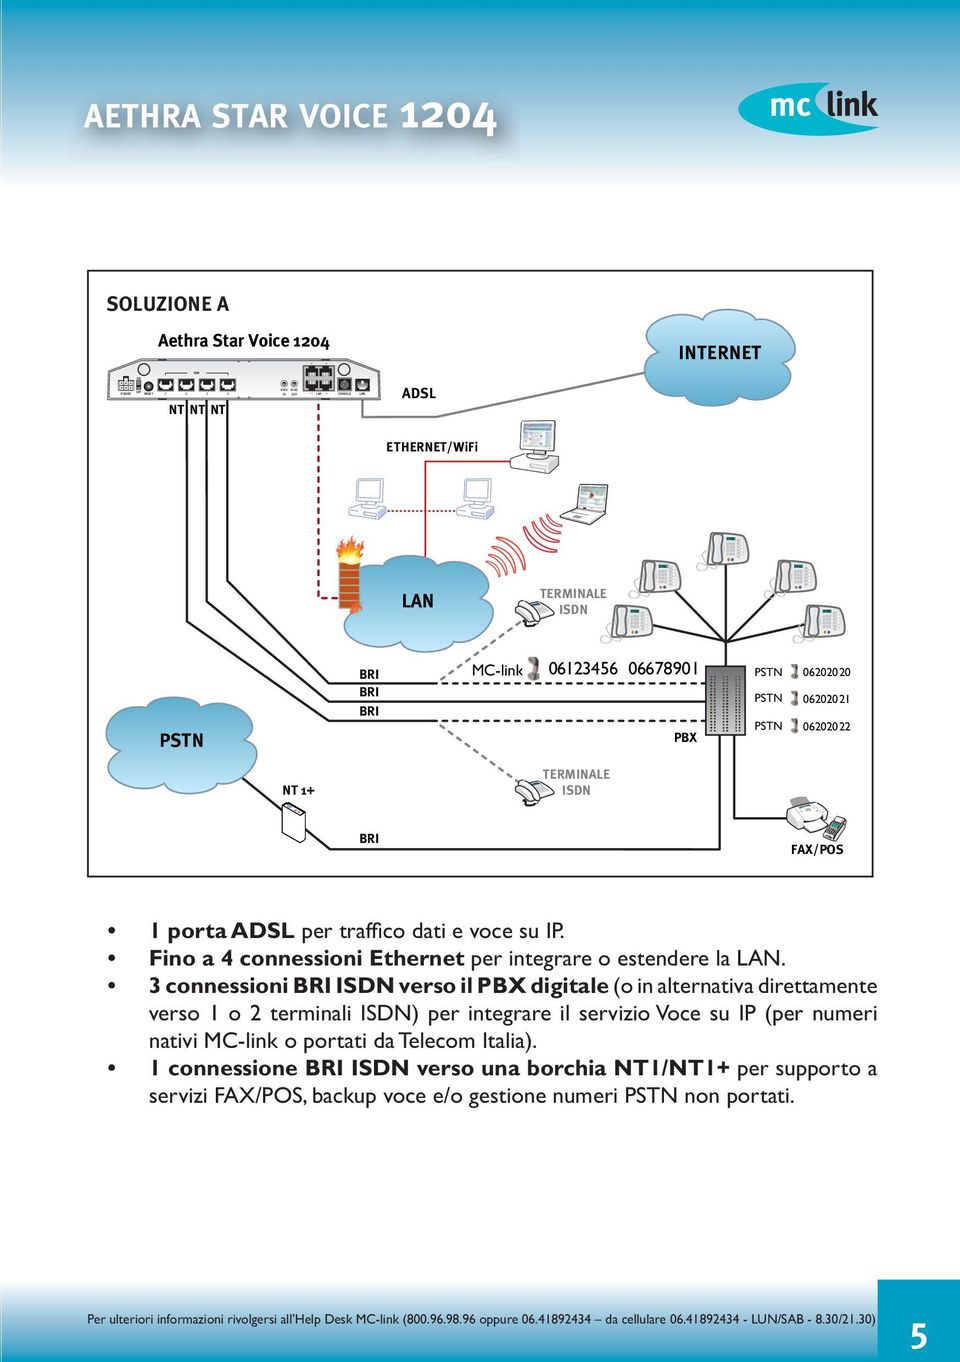 Fino a 4 connessioni Ethernet per integrare o estendere la LAN.